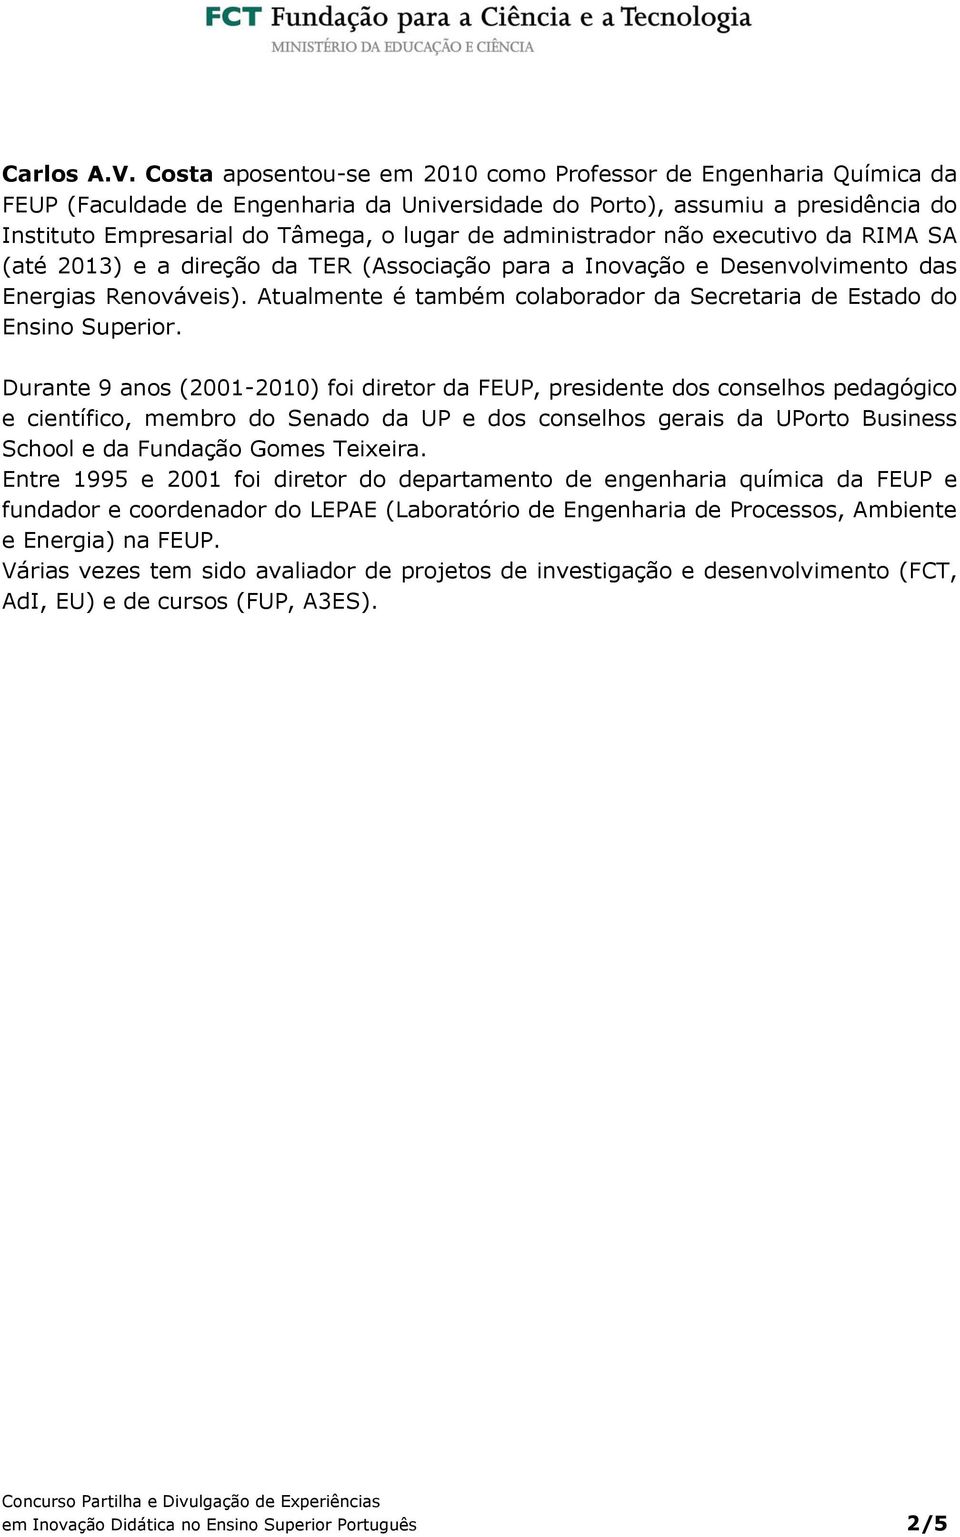 administrador não executivo da RIMA SA (até 2013) e a direção da TER (Associação para a Inovação e Desenvolvimento das Energias Renováveis).